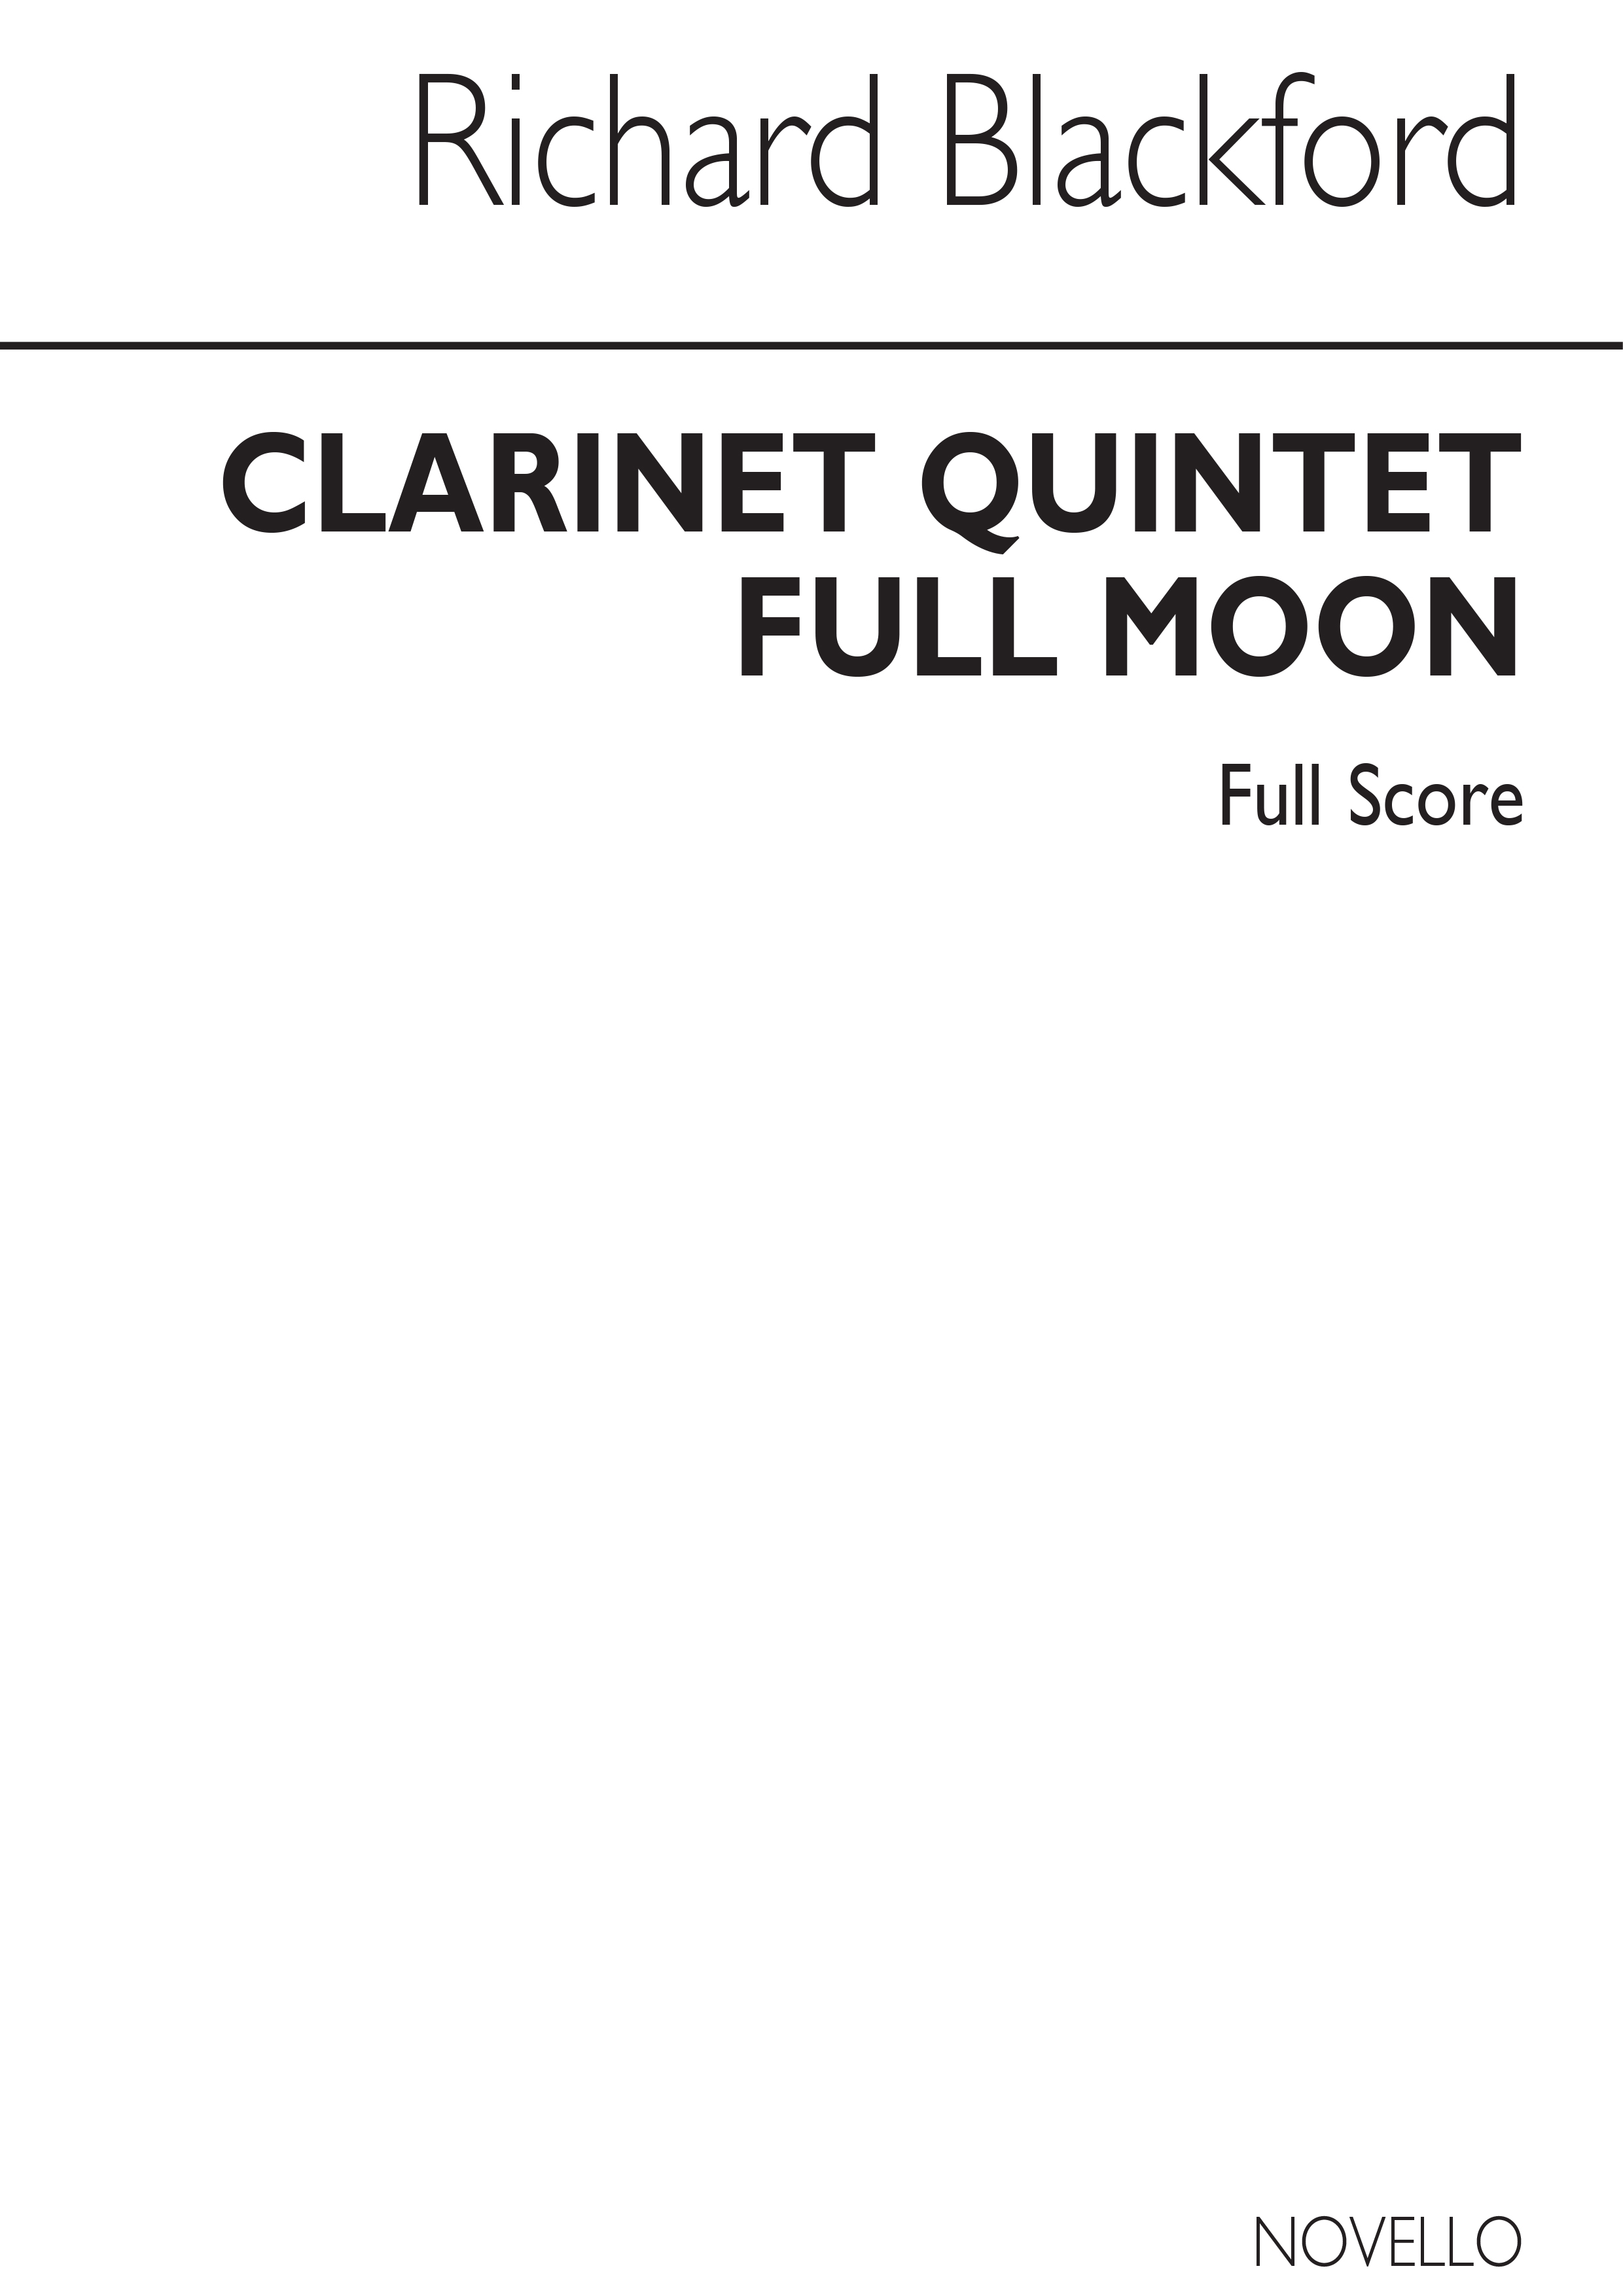 Richard Blackford: Full Moon - Clarinet Quintet: Clarinet: Score